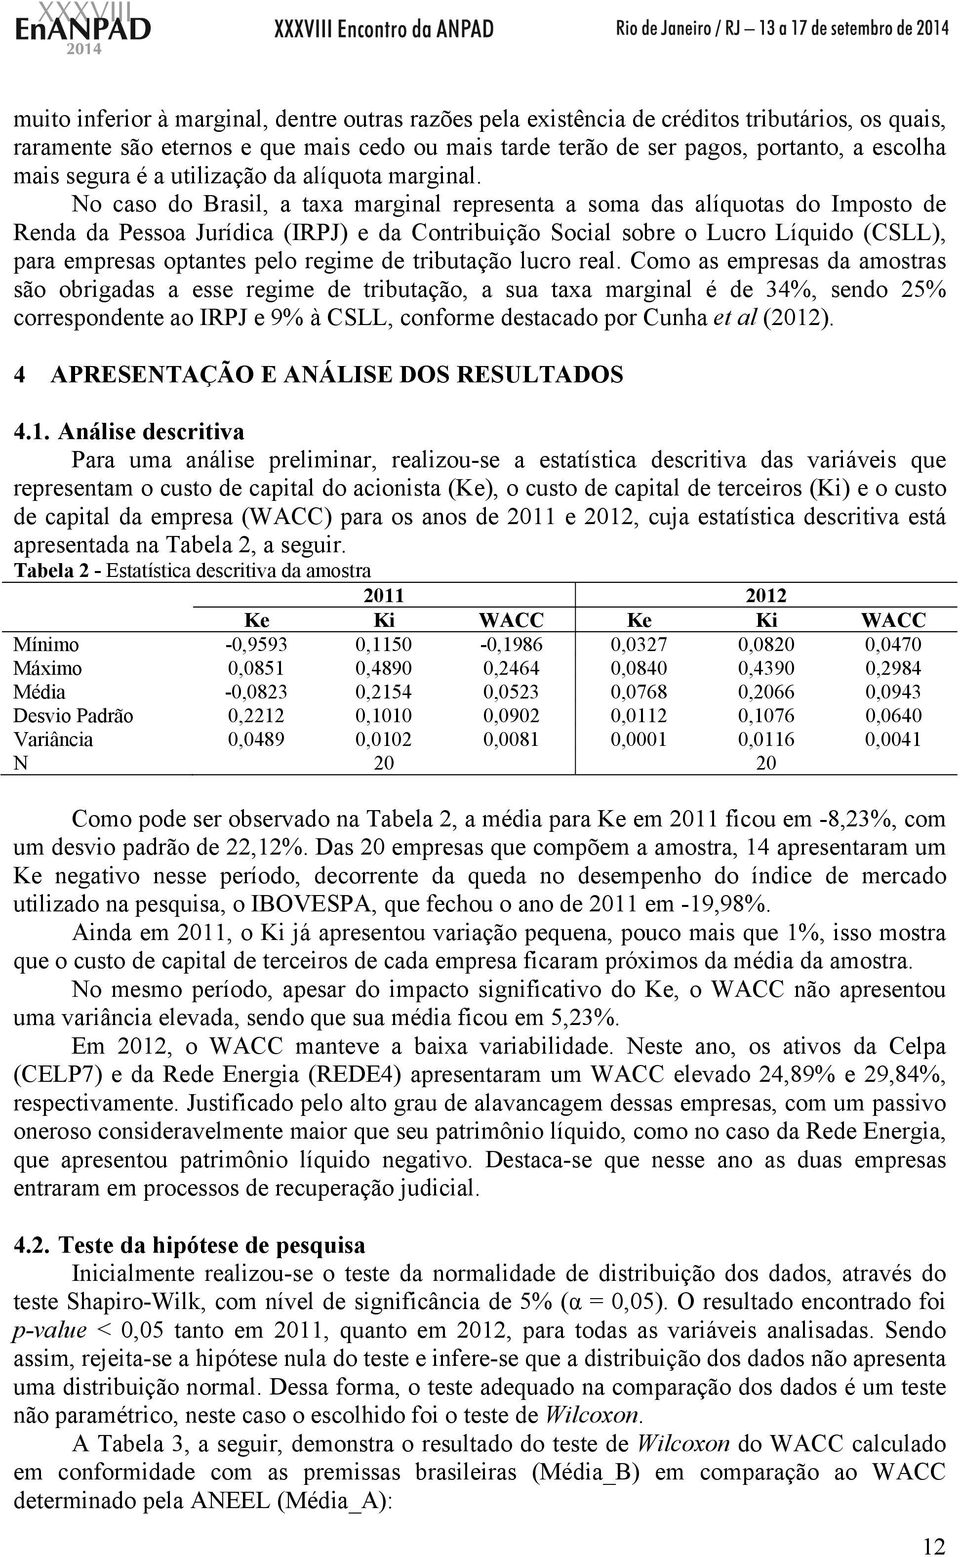 No caso do Brasil, a taxa marginal representa a soma das alíquotas do Imposto de Renda da Pessoa Jurídica (IRPJ) e da Contribuição Social sobre o Lucro Líquido (CSLL), para empresas optantes pelo